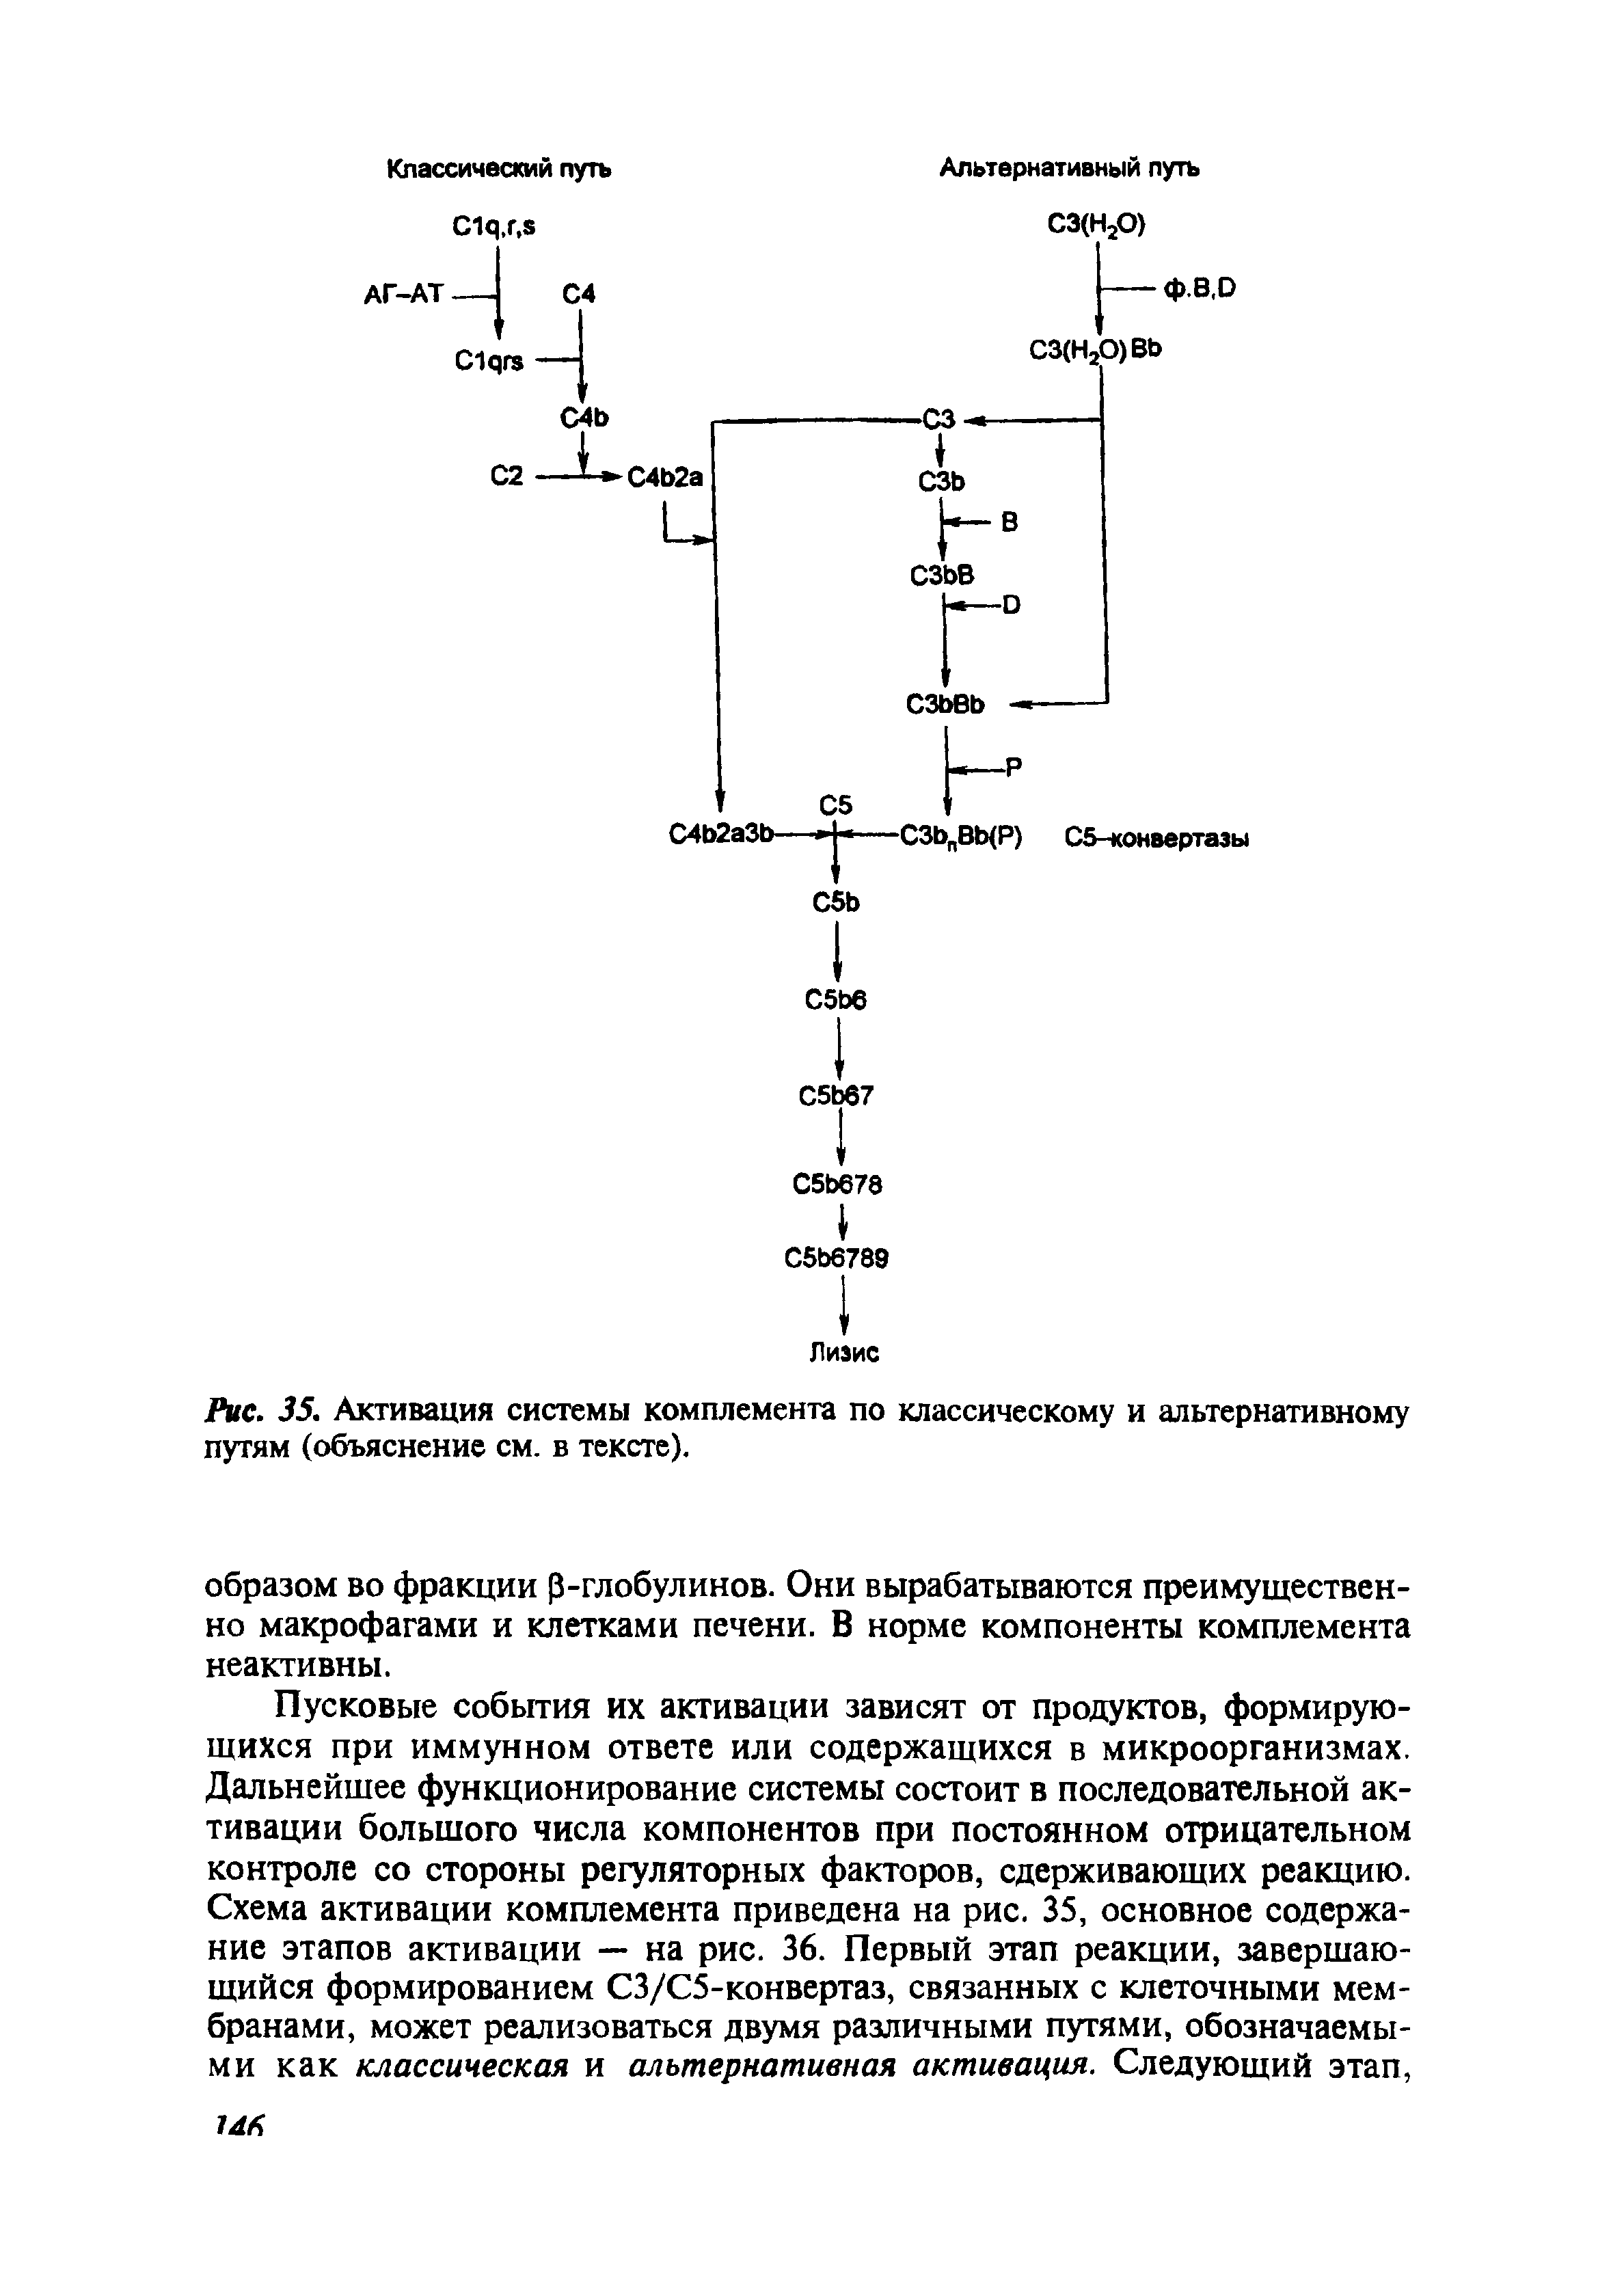 Рис. 35. Активация системы комплемента по классическому и альтернативному путям (объяснение см. в тексте).